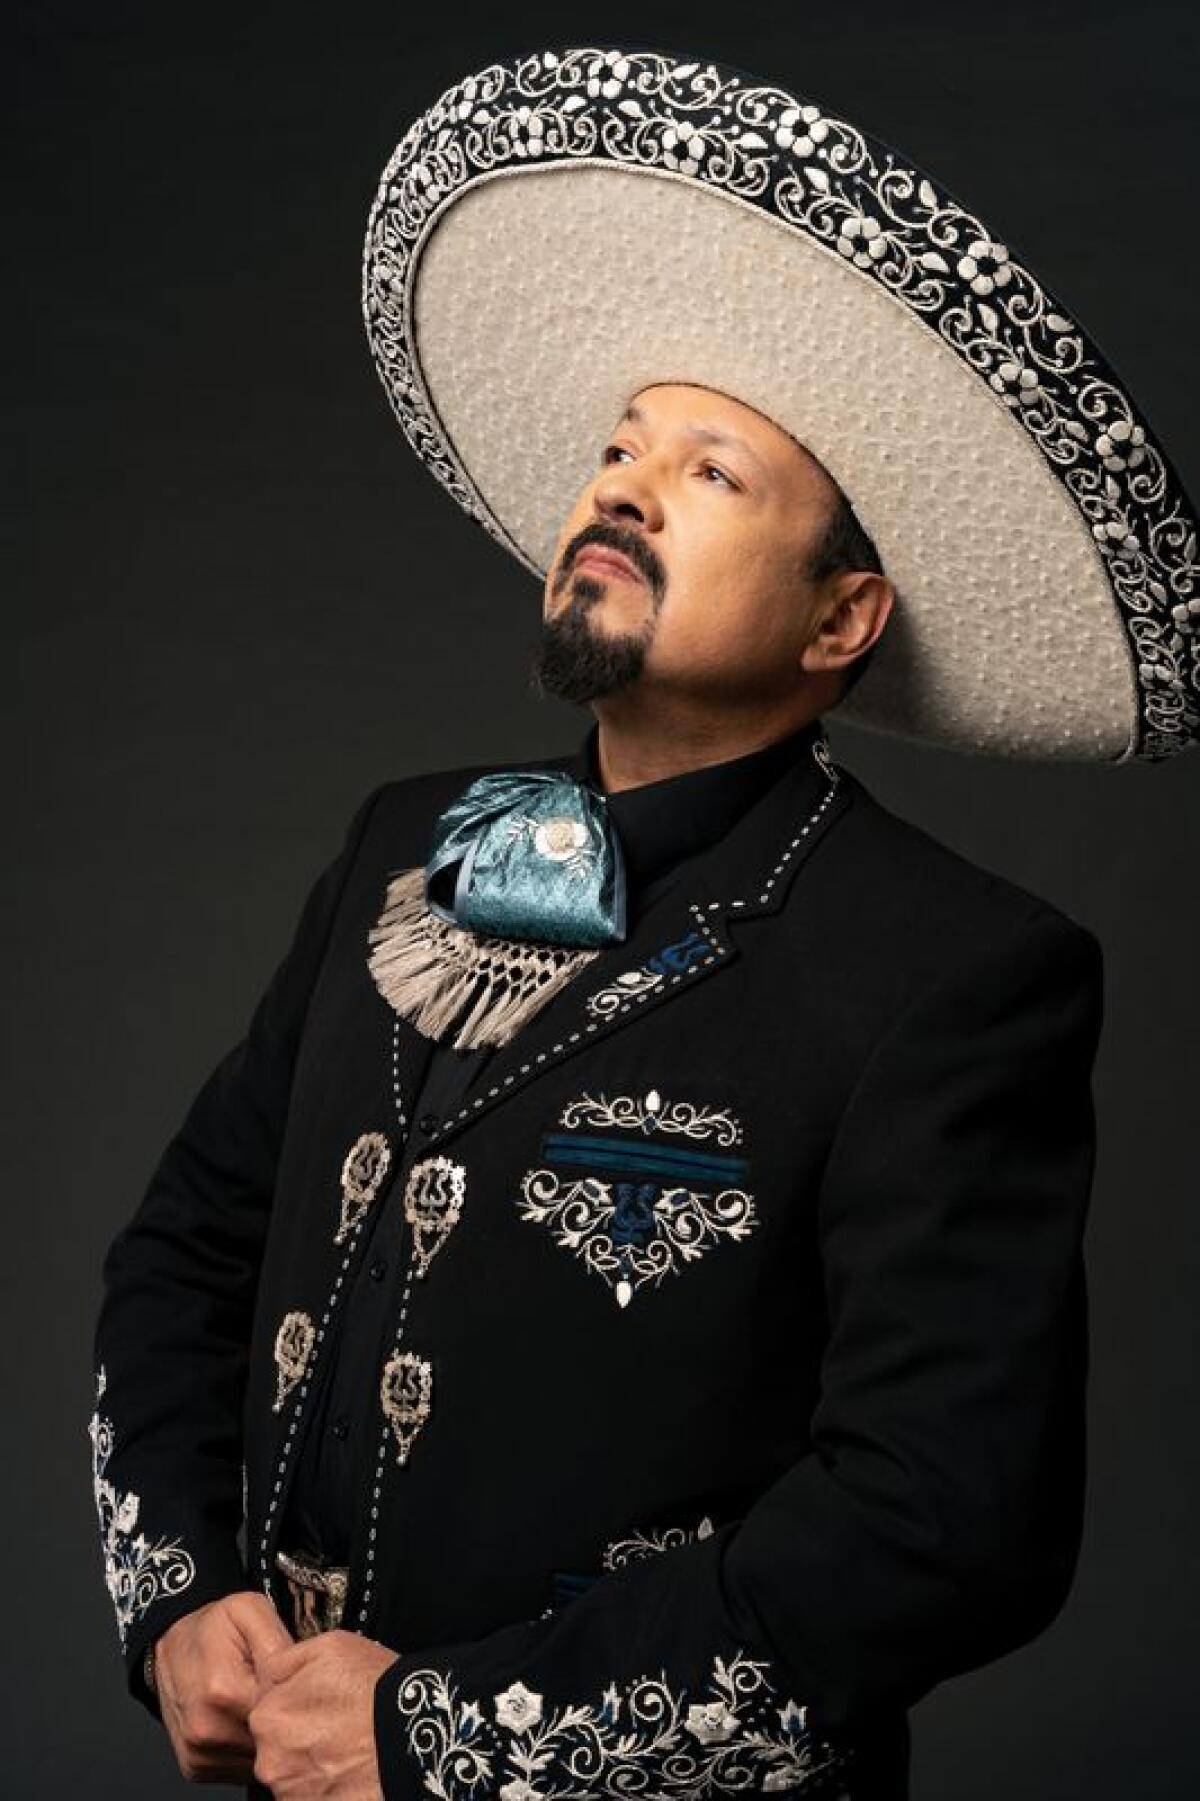 Pepe Aguilar regresa con un nuevo sencillo de corte romántico desgarrador que muestra una nueva visión del mariachi.